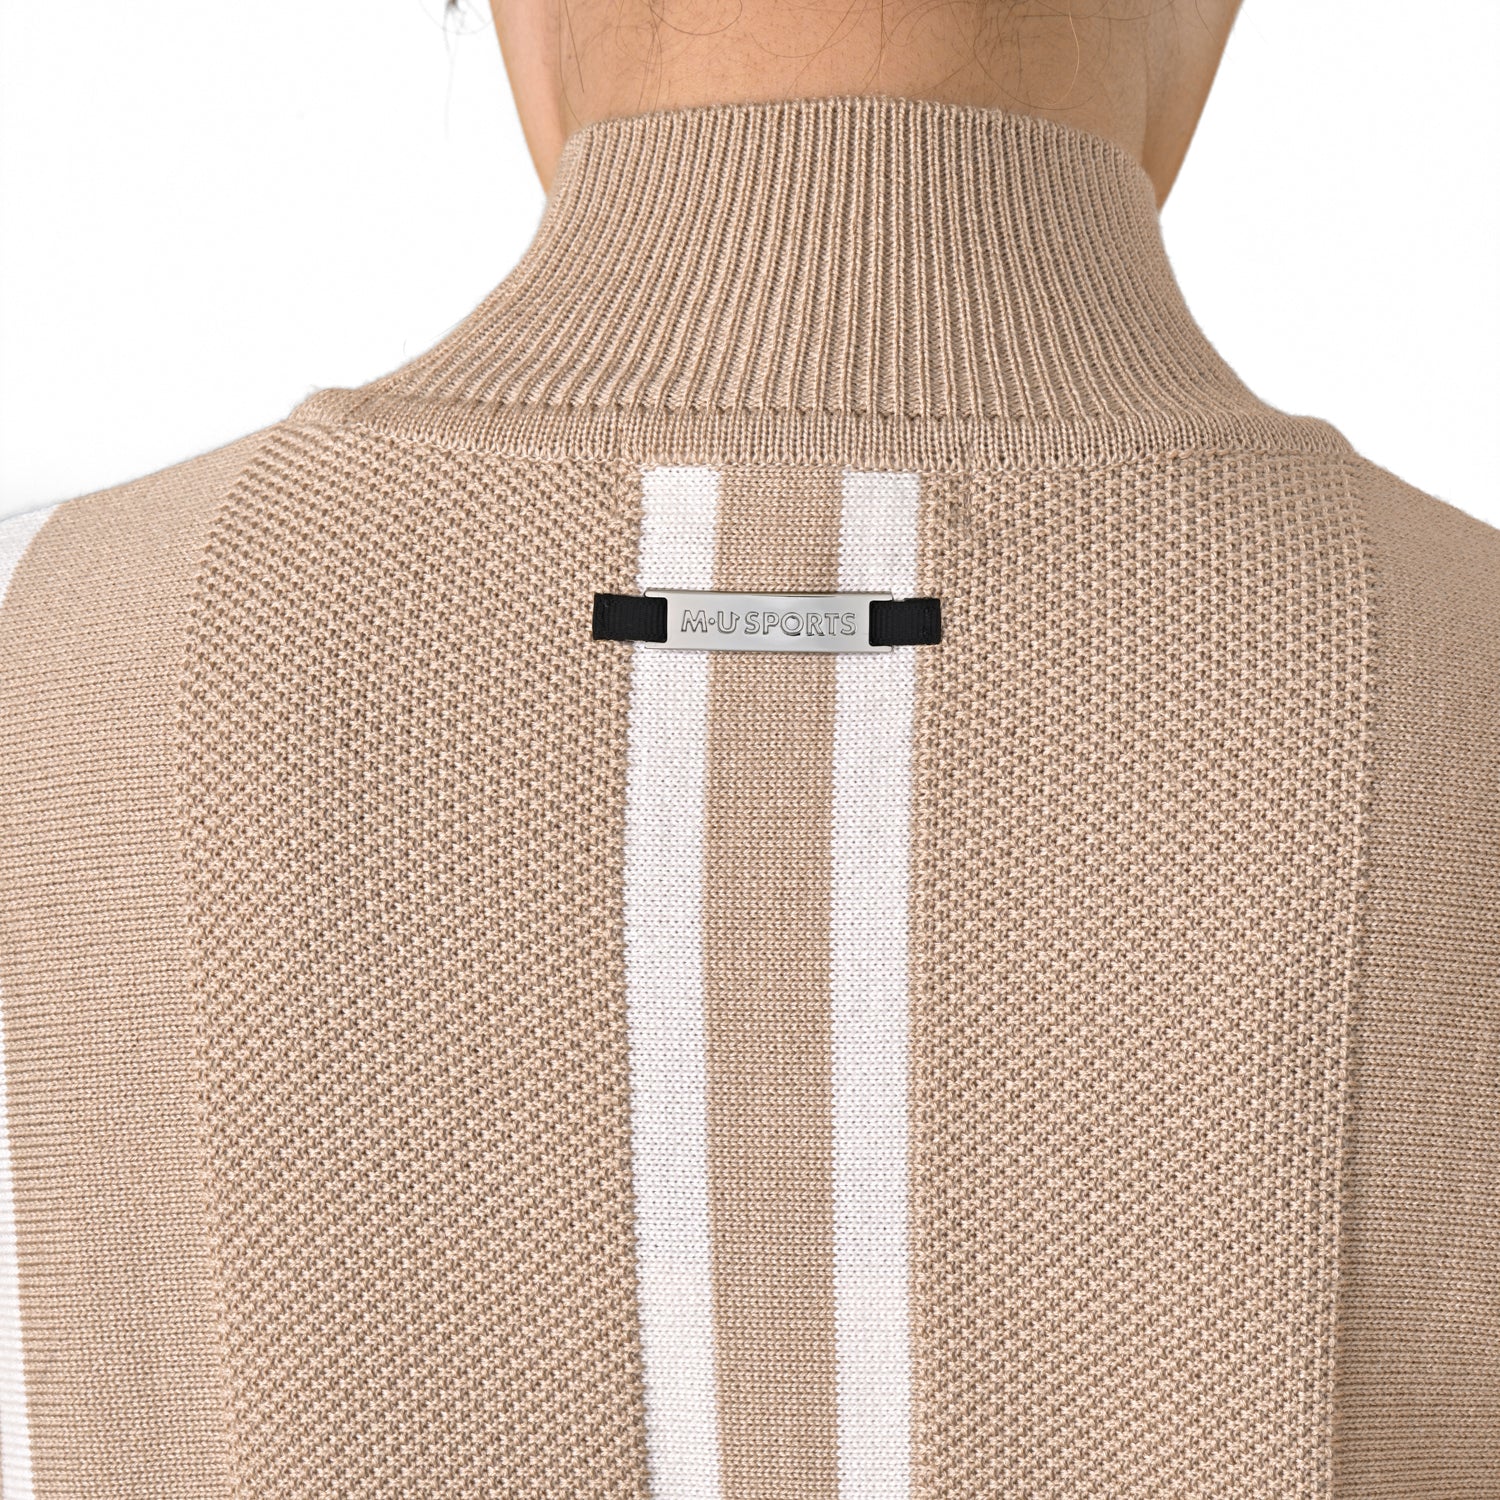 Shoulder frill stripe high neck setter (701J8206)